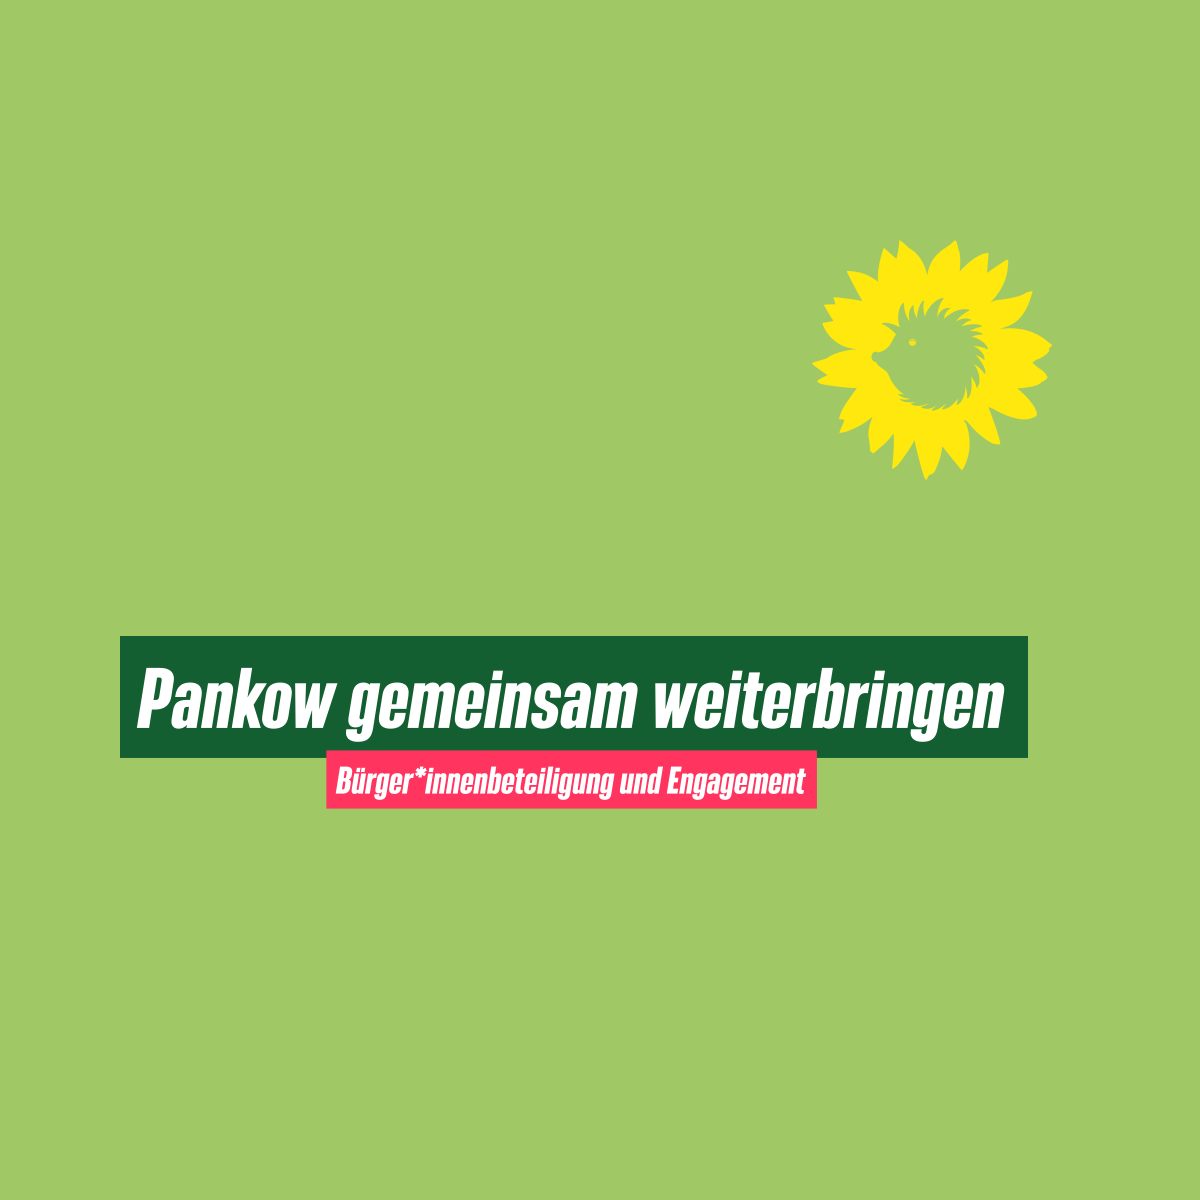 Text: "Pankow gemeinsam weiterbringen"